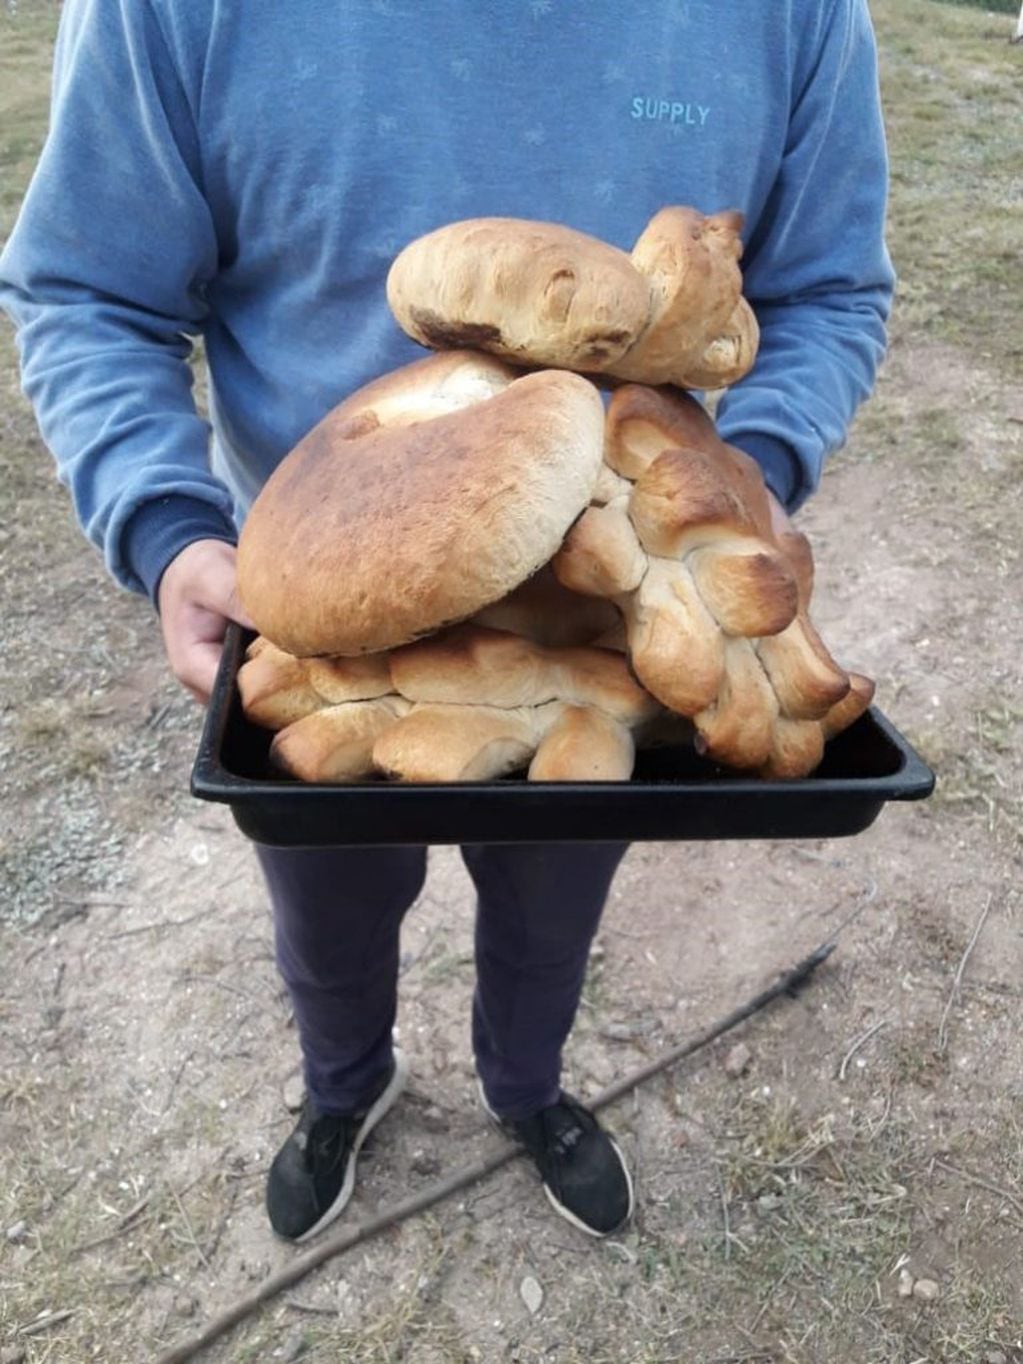 Deliciosos panes caseros que pueden hacerse con o sin chicharrón.